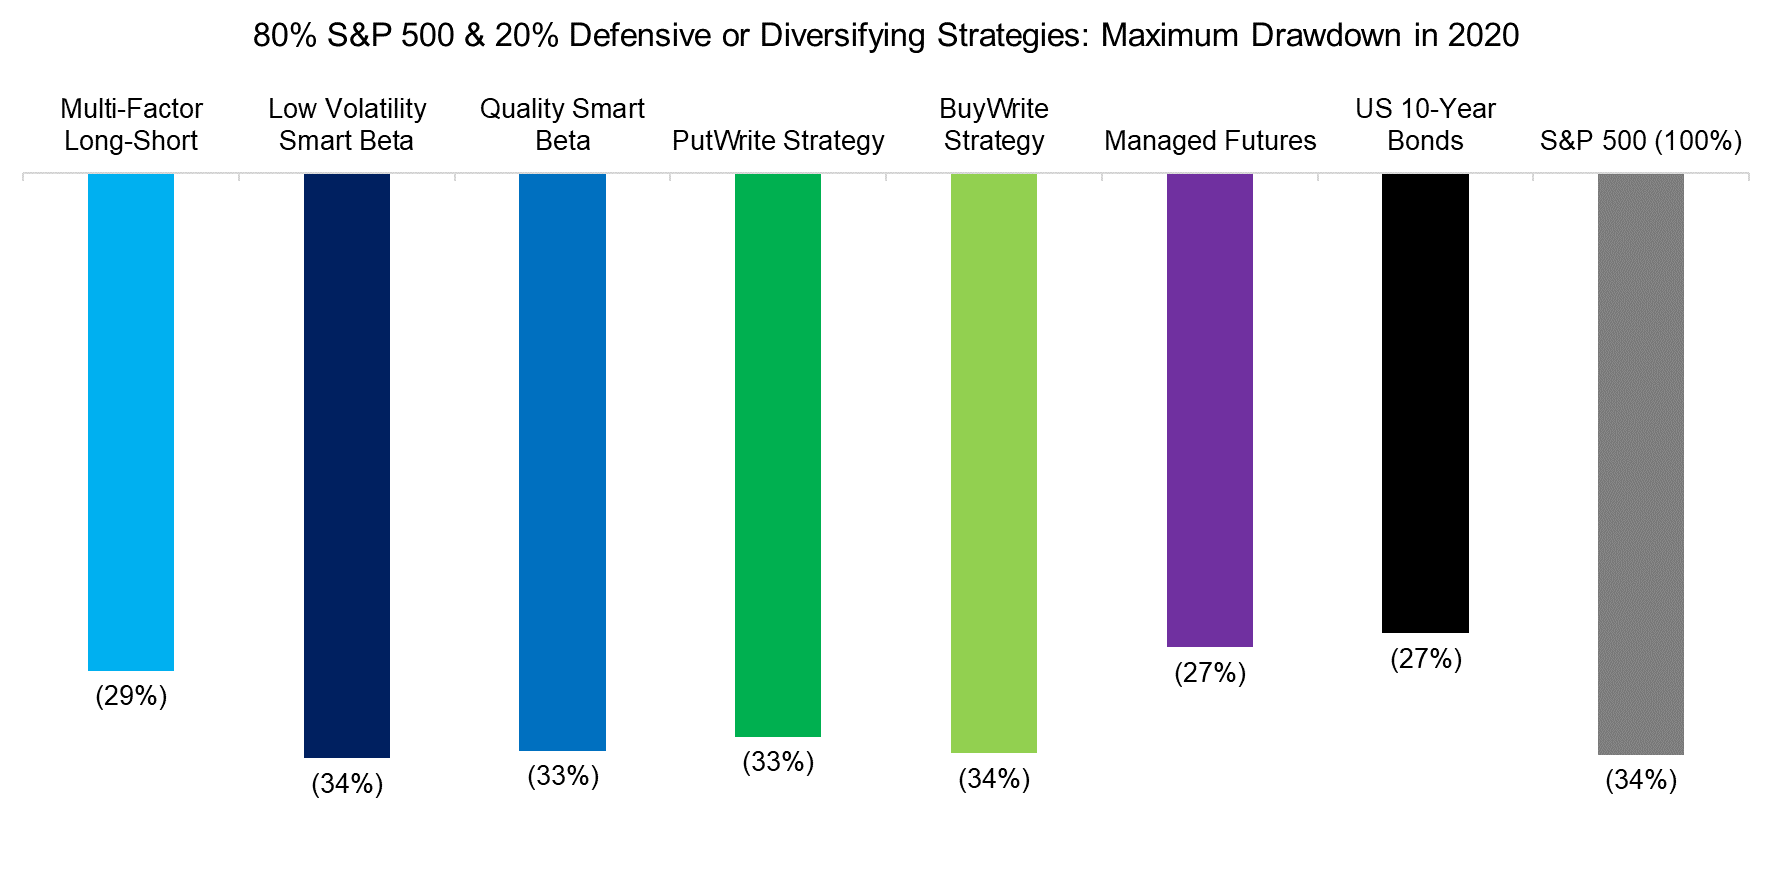 80% S&P 500 & 20% Defensive or Diversifying Strategies Maximum Drawdown in 2020